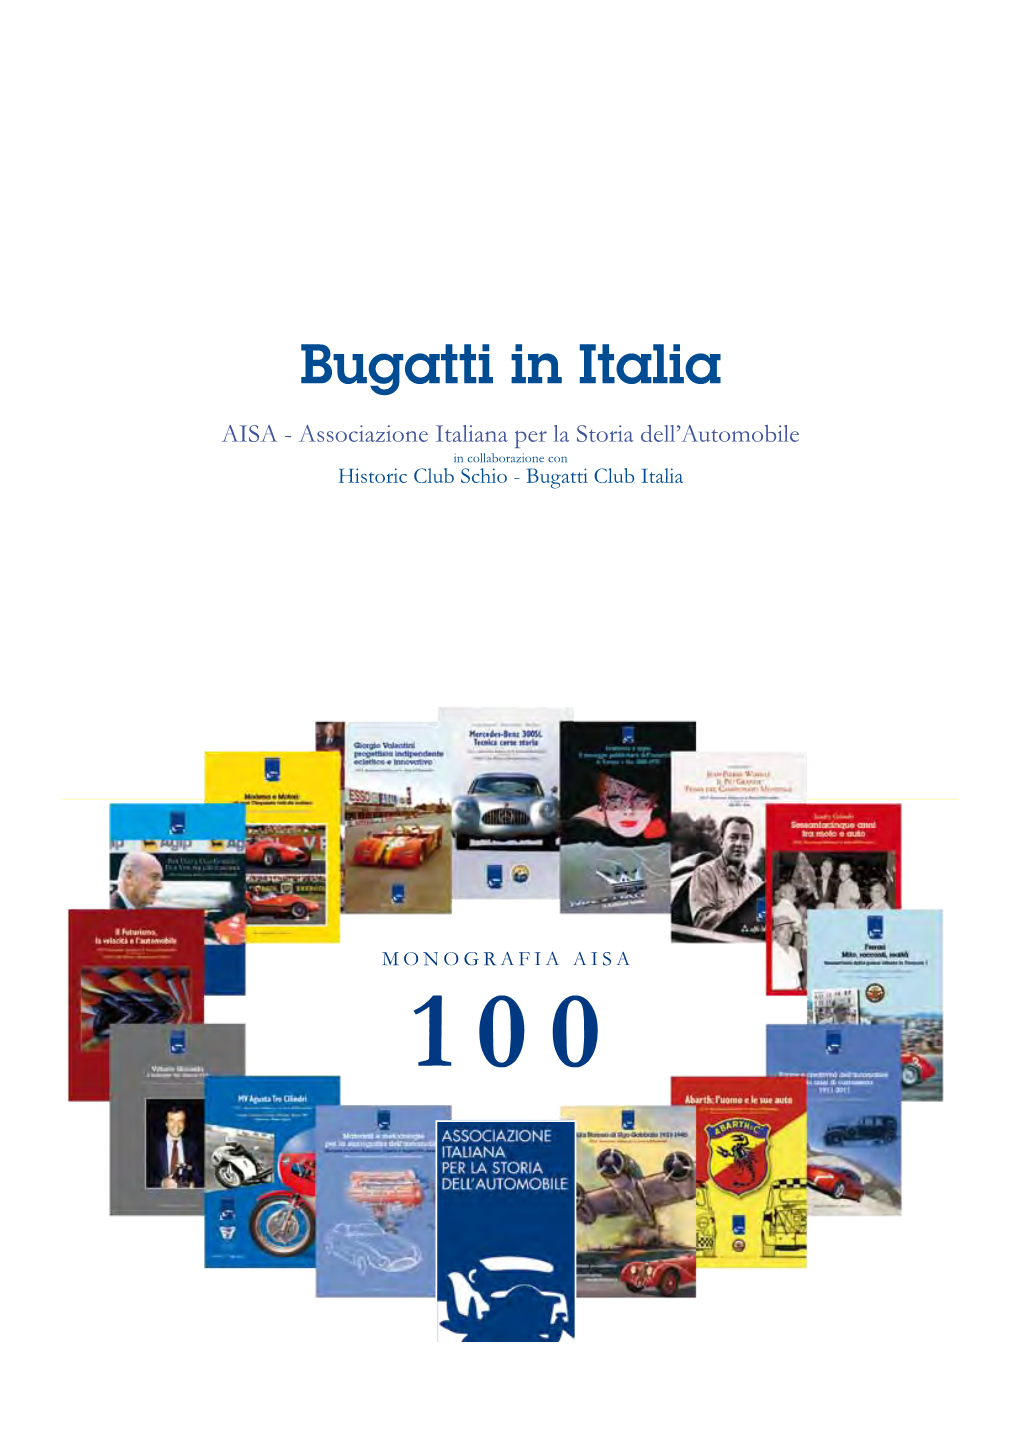 Bugatti in Italia AISA - Associazione Italiana Per La Storia Dell’Automobile in Collaborazione Con Historic Club Schio - Bugatti Club Italia